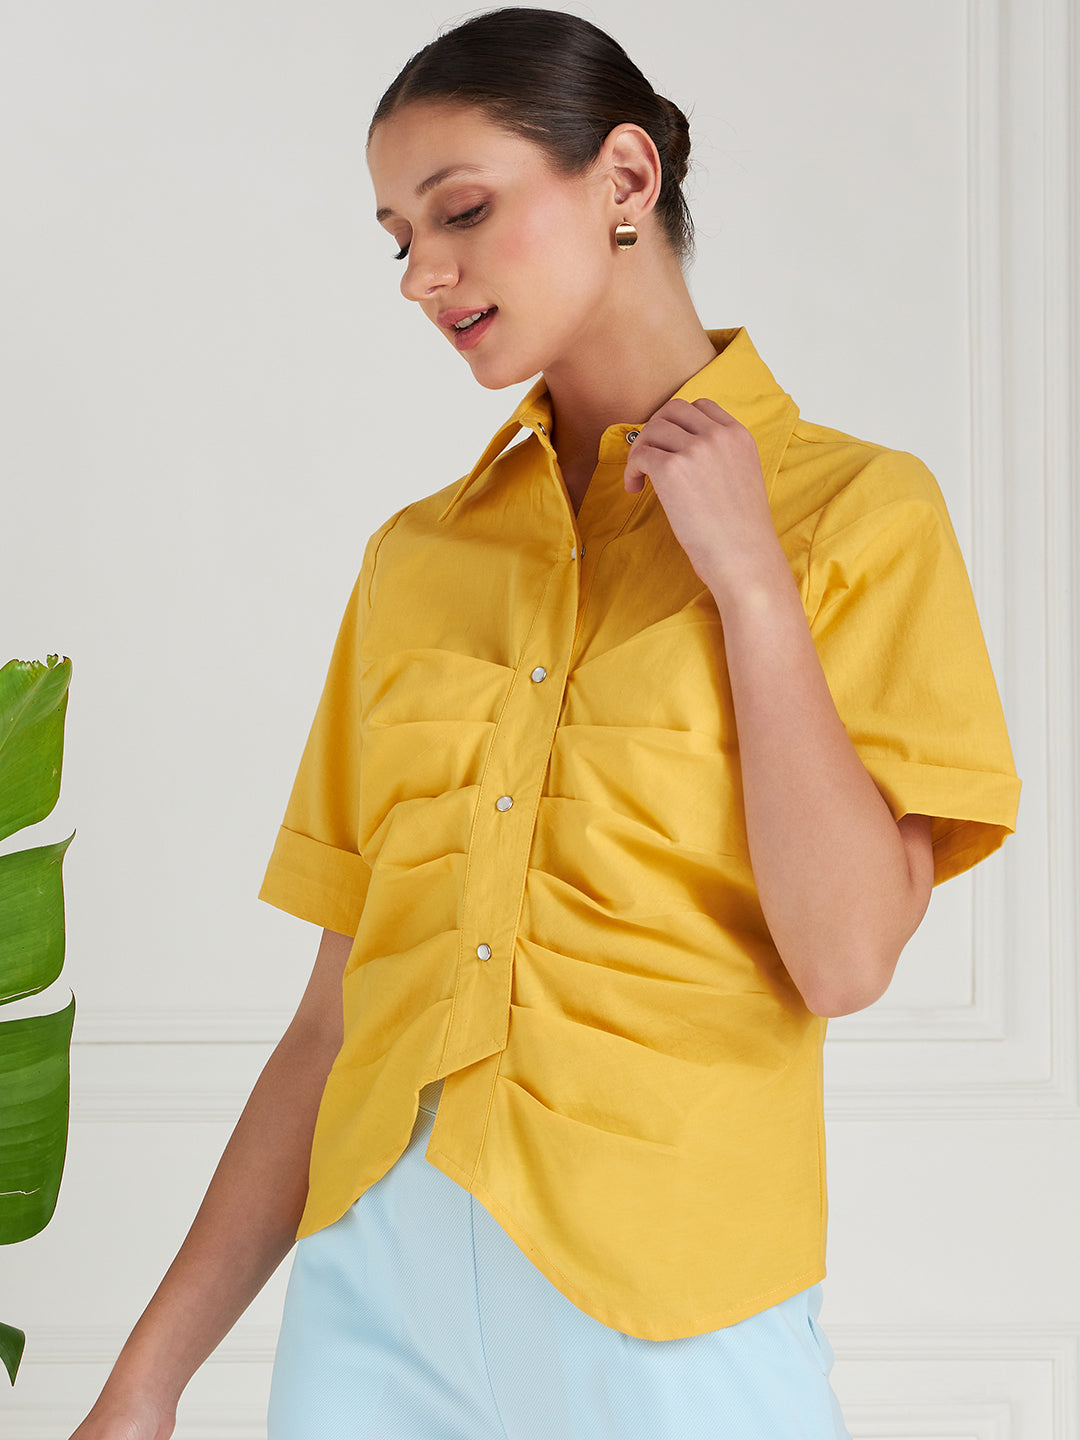 Athena Front Pleated Cotton Shirt Style Top - Athena Lifestyle